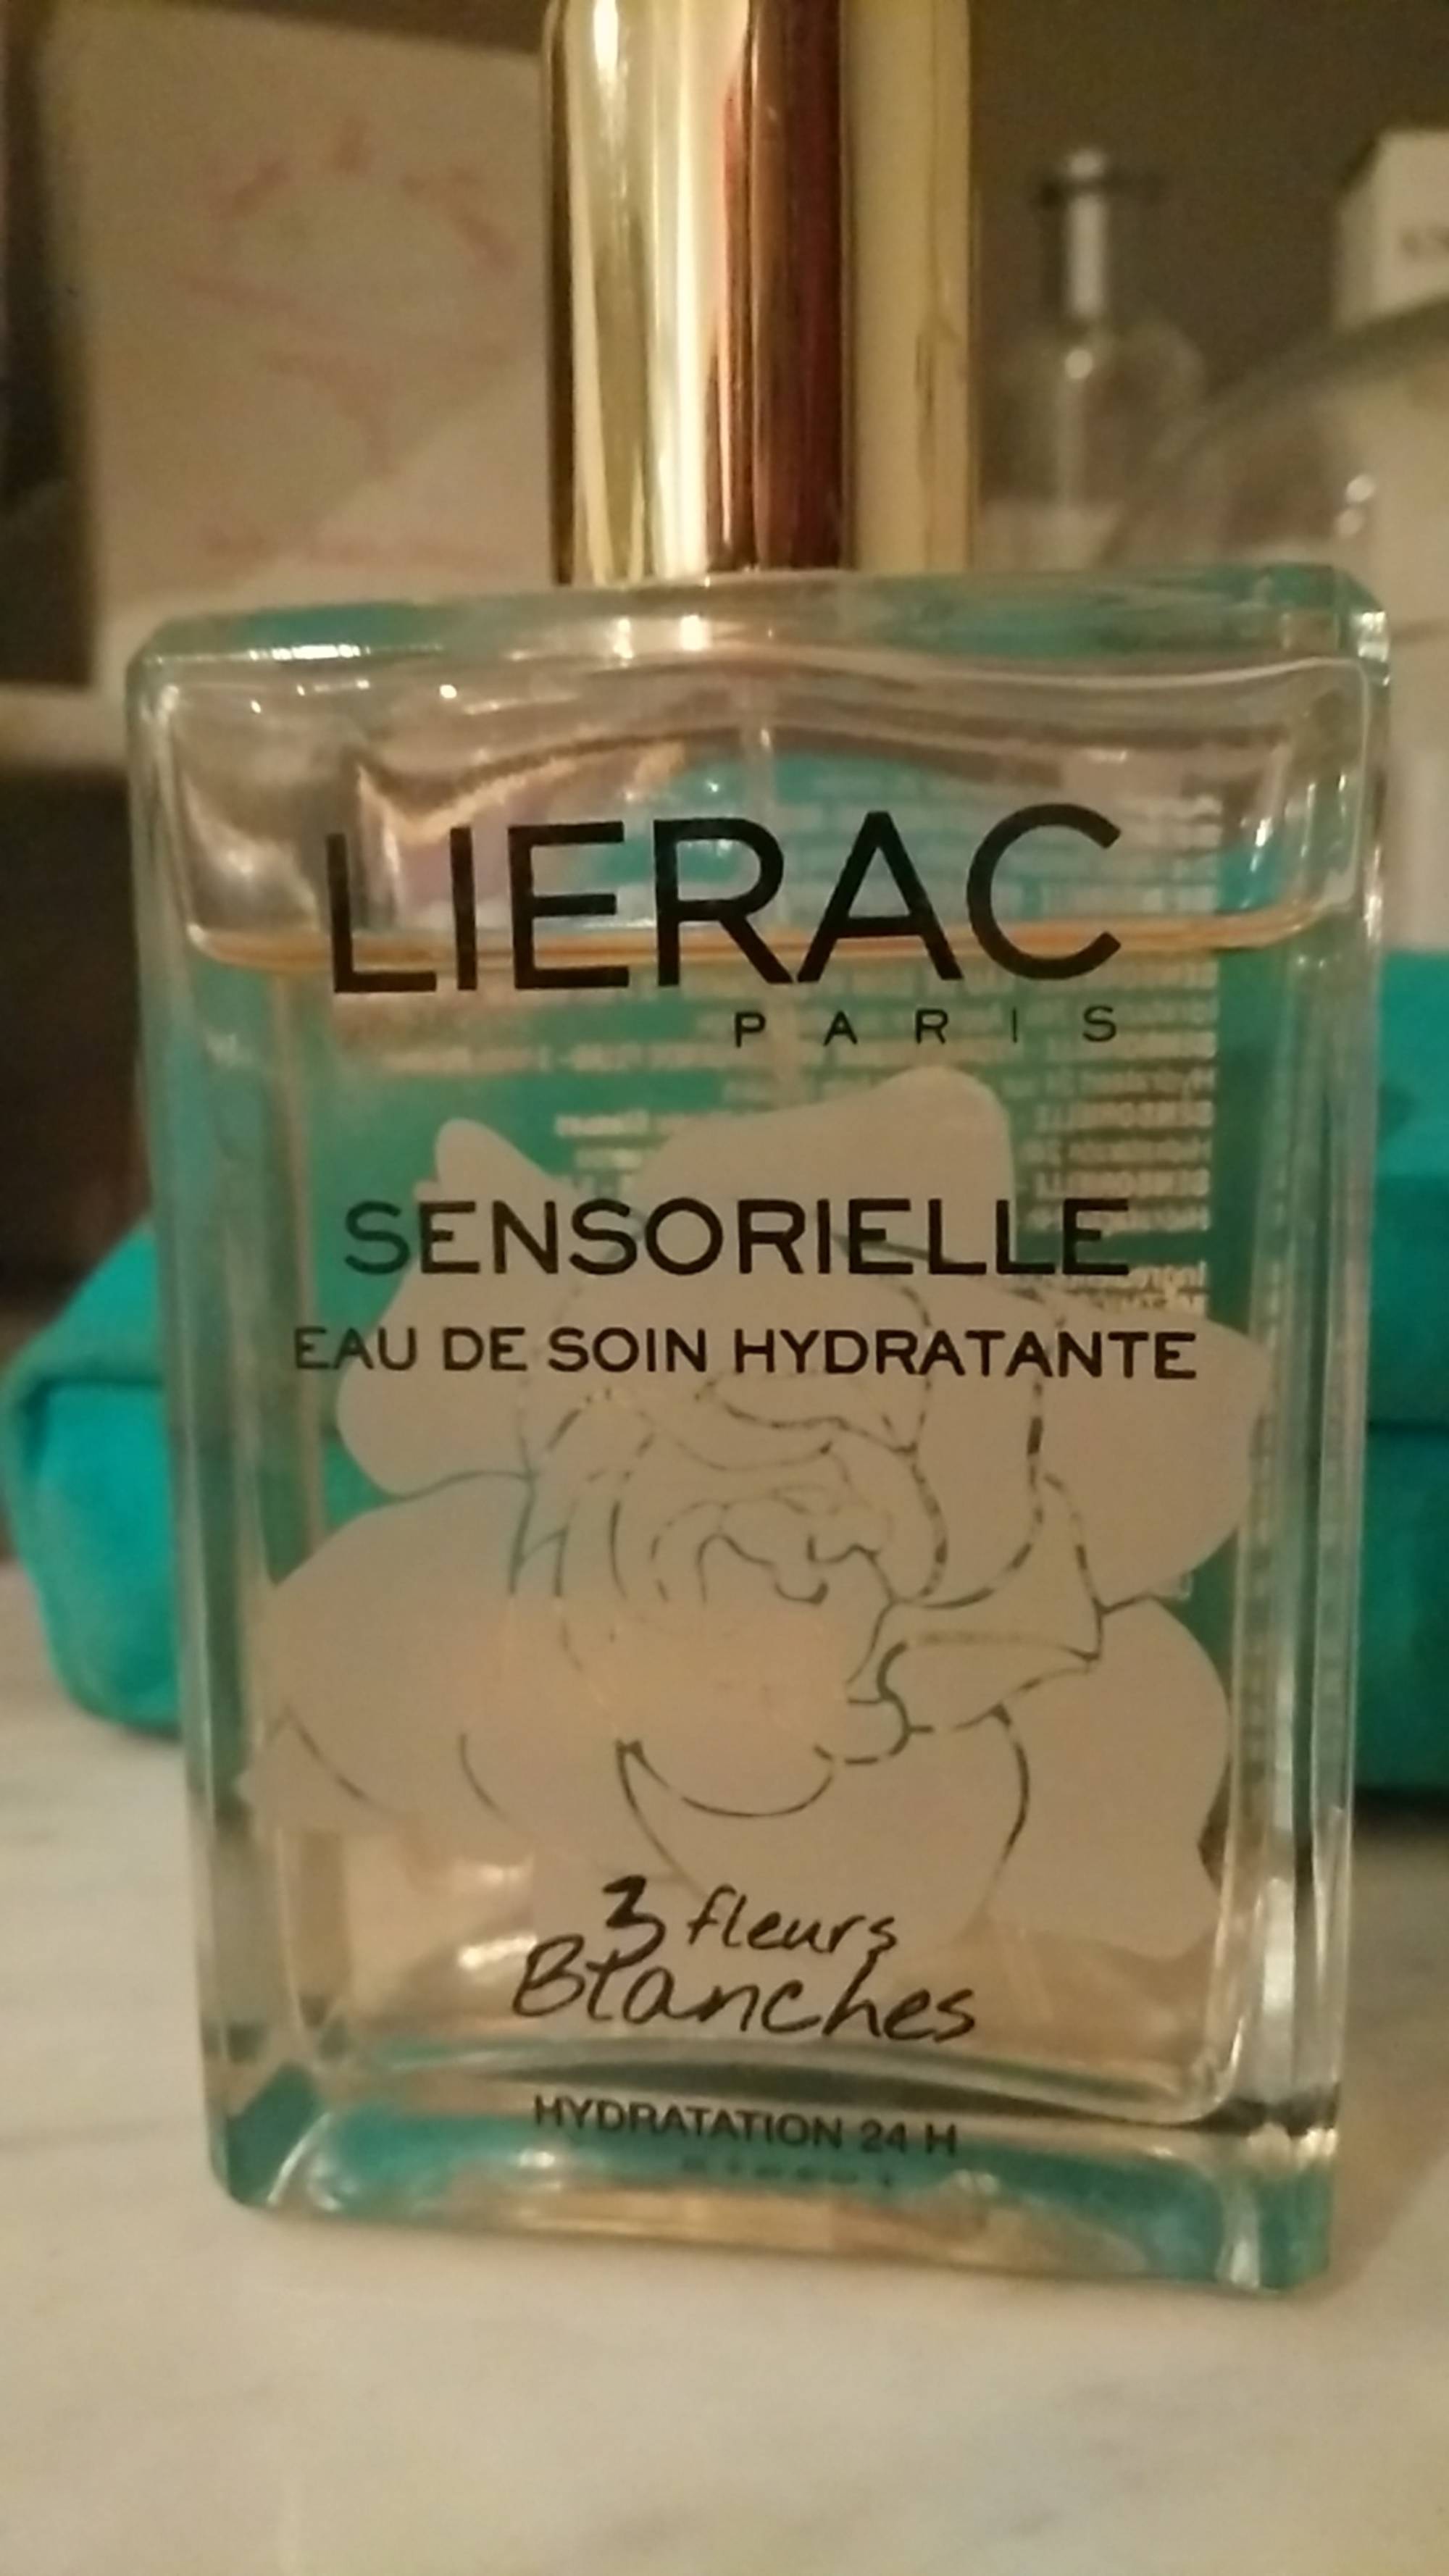 LIÉRAC - Sensorielle  - Eau de soin hydratante 3 fleurs blanches 24h